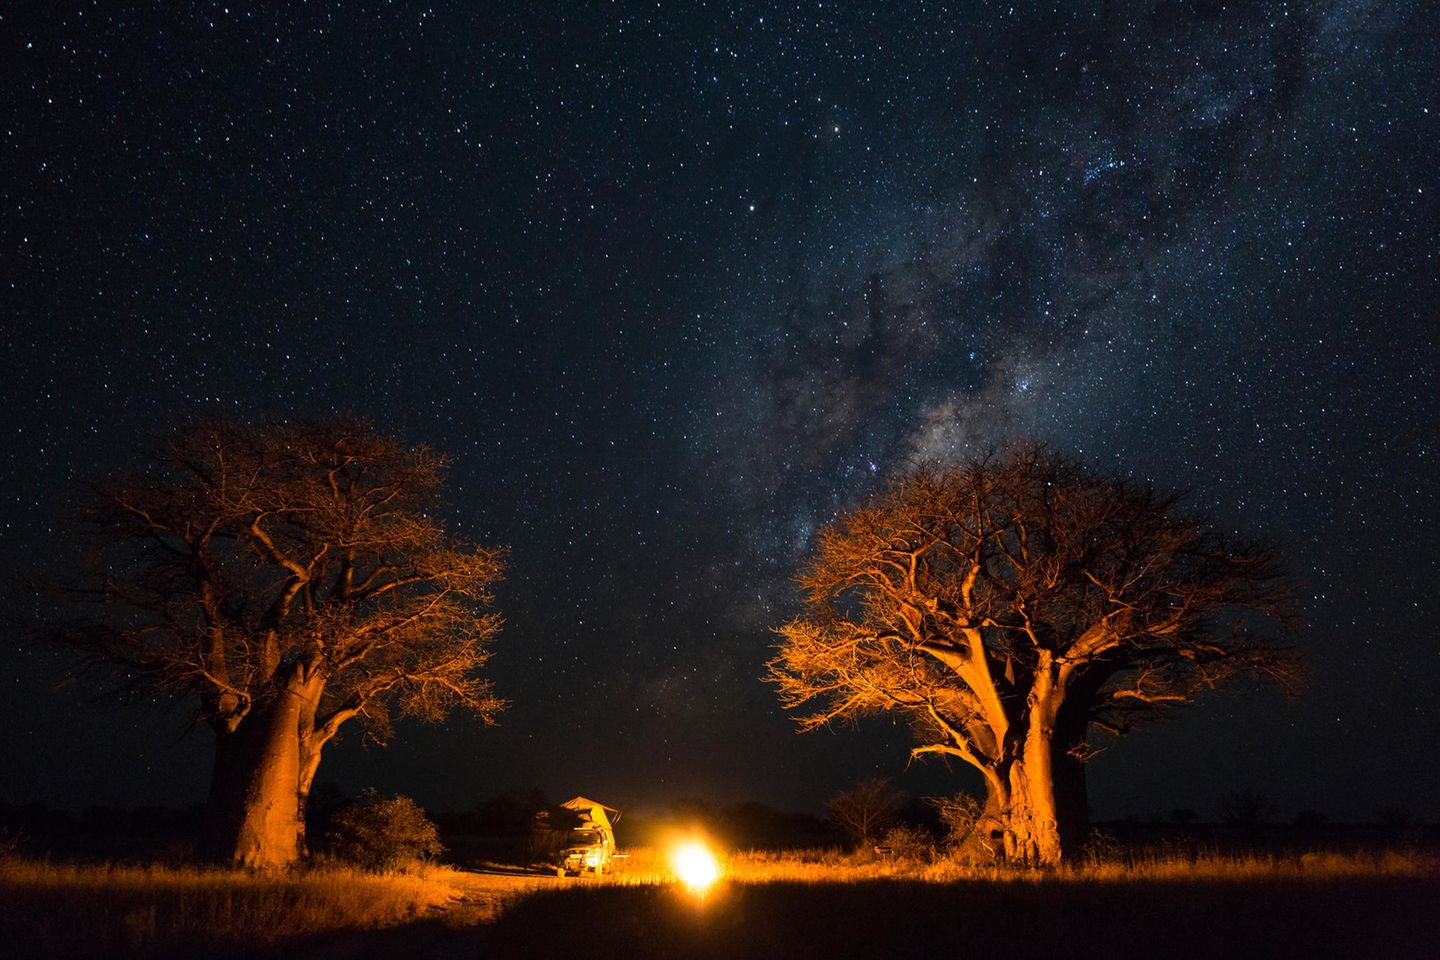 Camper zwischen zwei Bäumen am Lagerfeuer, darüber der Sternenhimmel